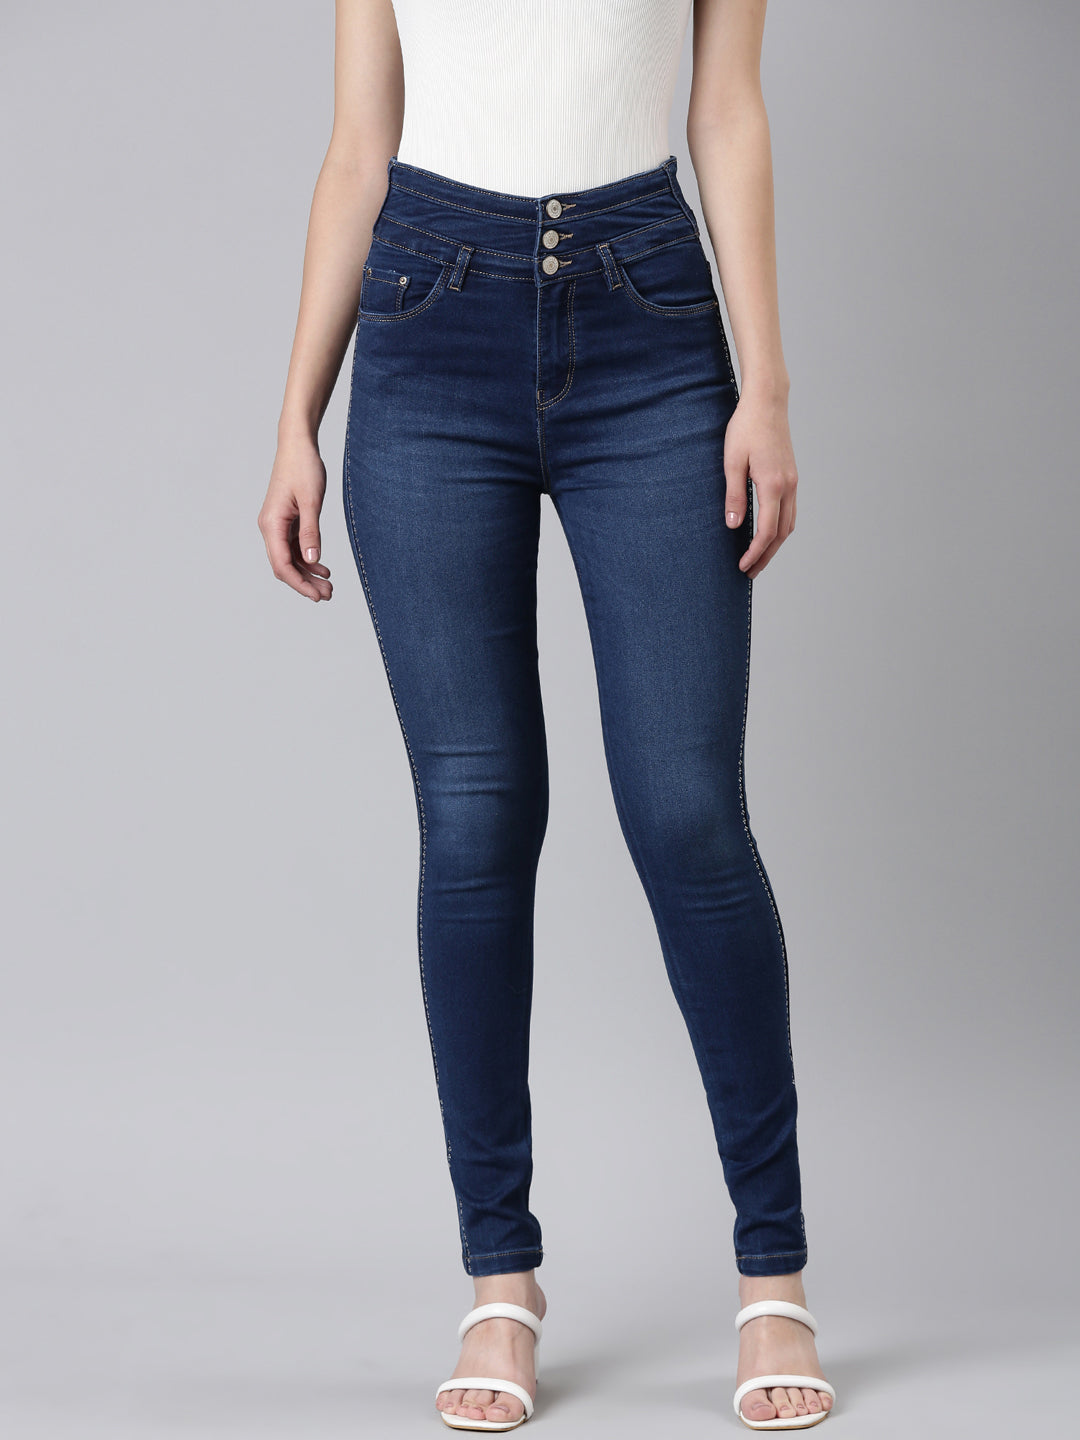 Women Navy Blue Embellished Skinny Fit Denim Jeans